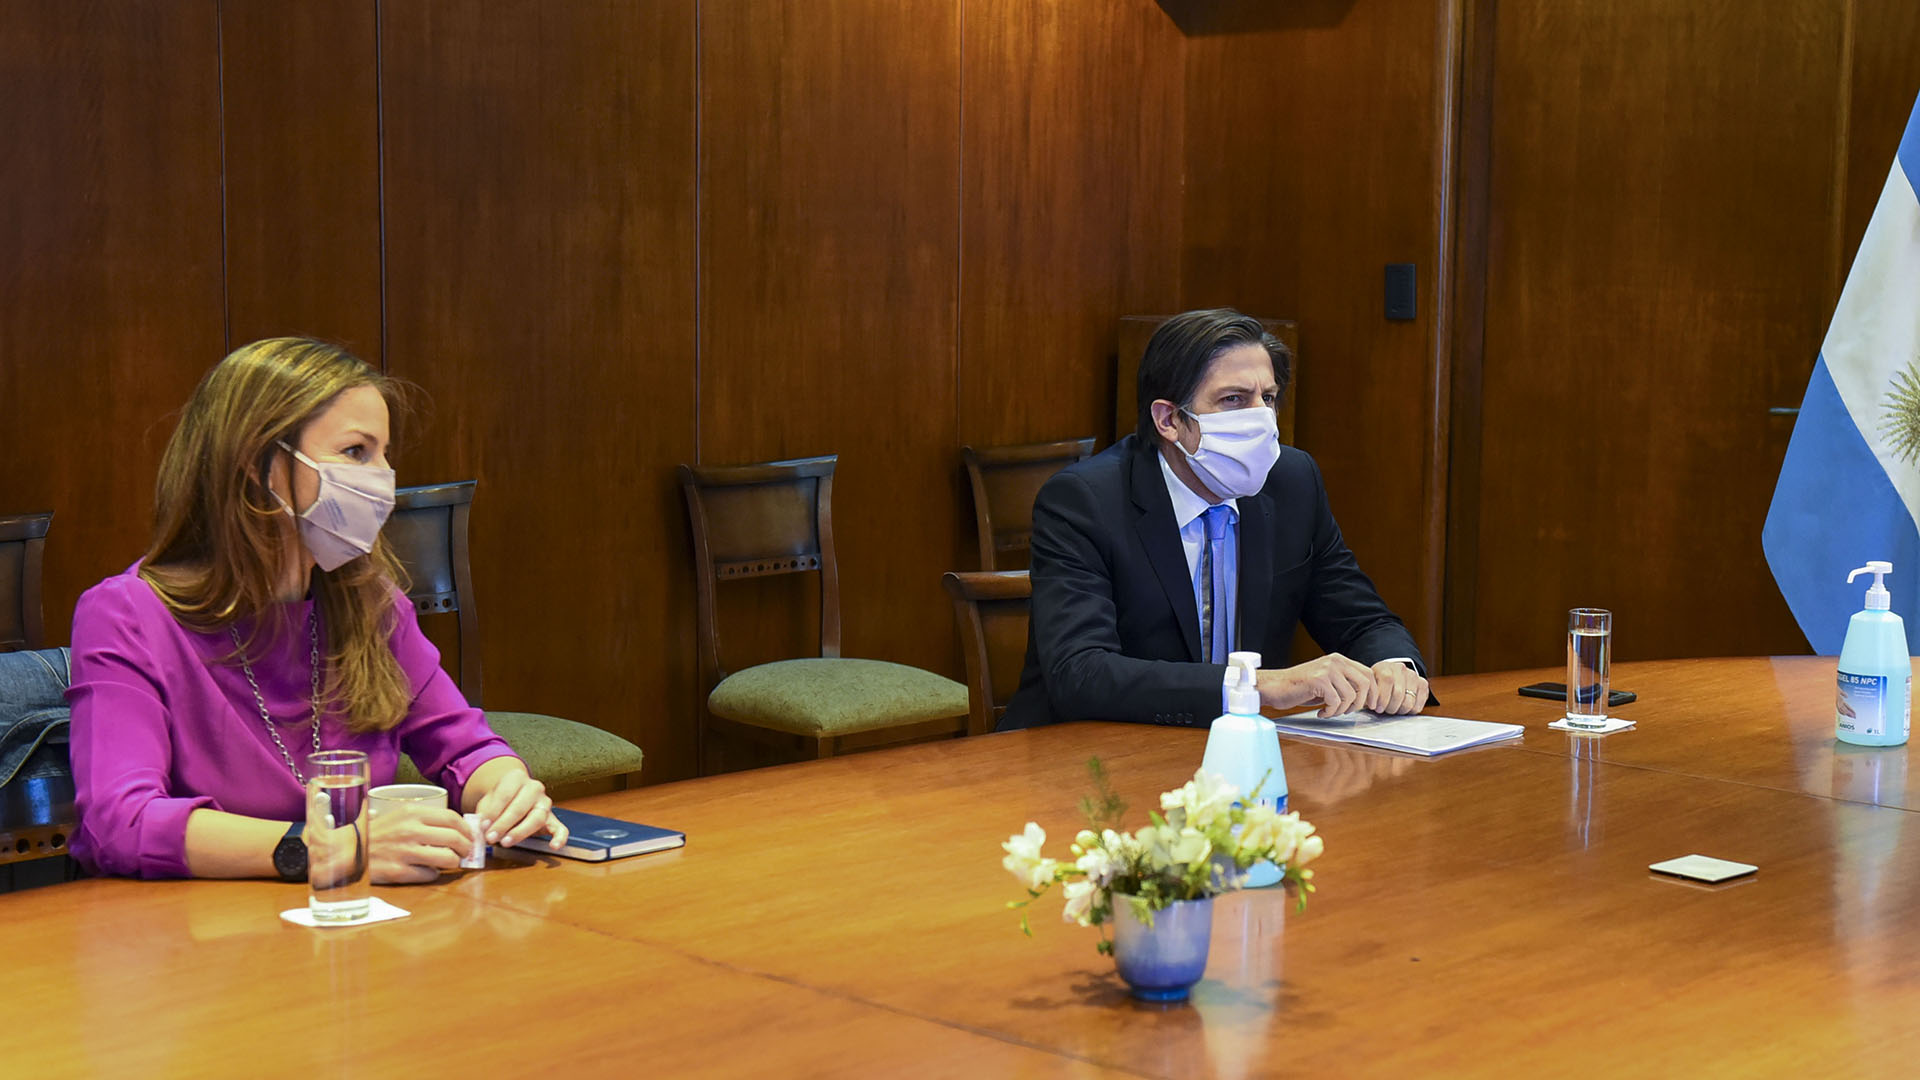 De izquierda a derecha, la ministro de Educación porteña, Soledad Acuña, junto a su par nacional, Nicolás Trotta. 